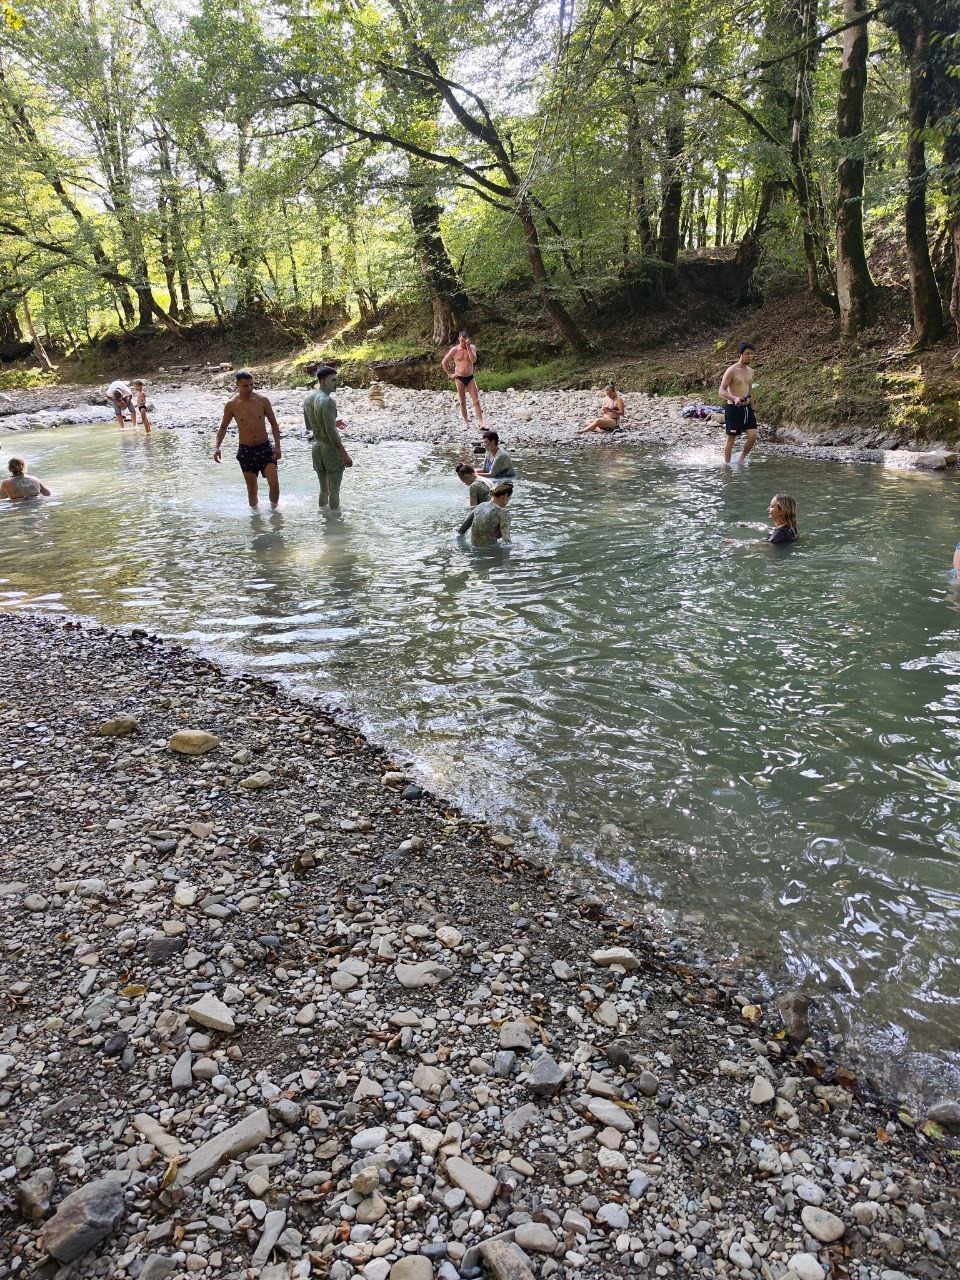 После купальни с голубой глиной люди купаются в горной реке